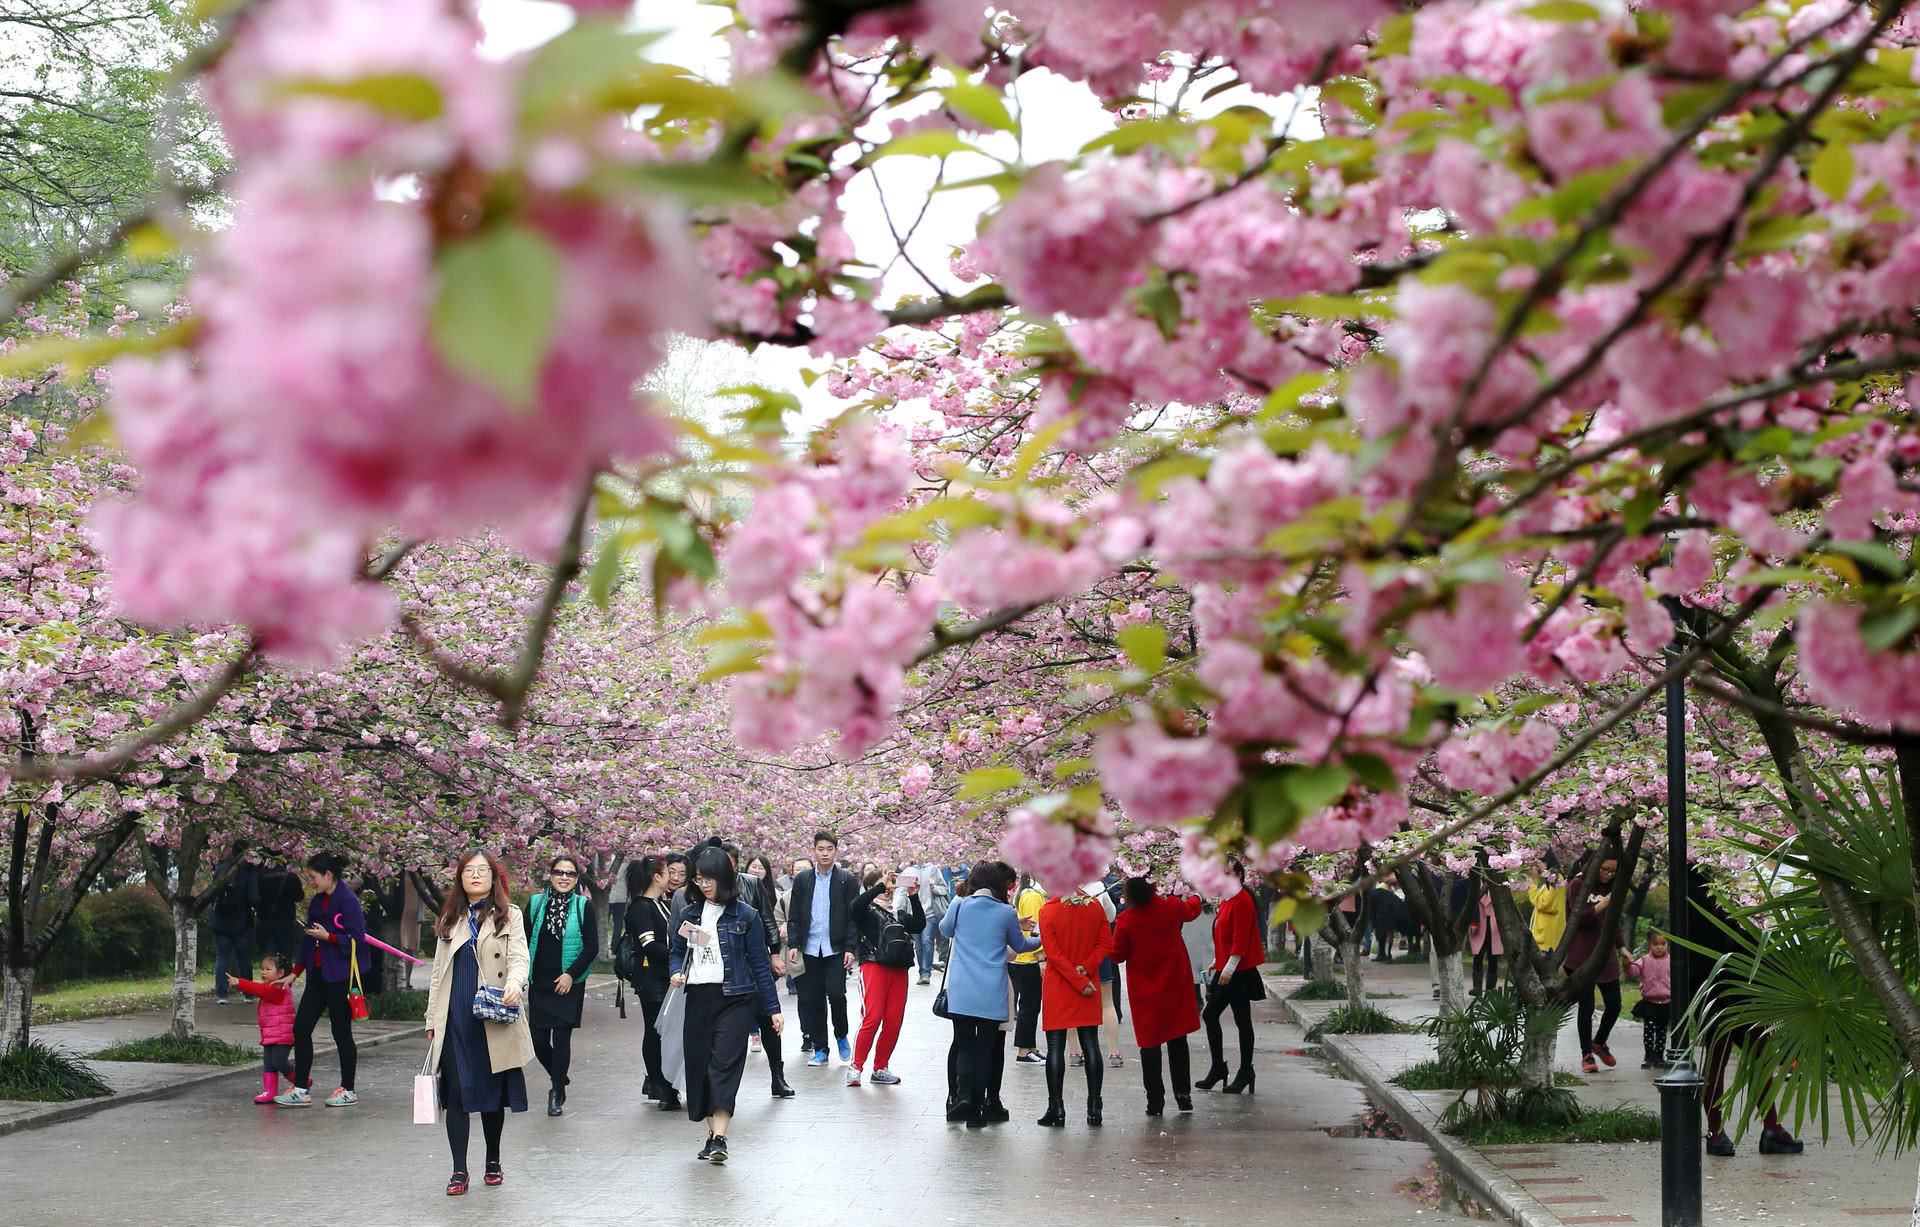 As cerejeiras em flor do as boas vindas  primavera na China com um dos maiores espetculos naturais da Terra 01